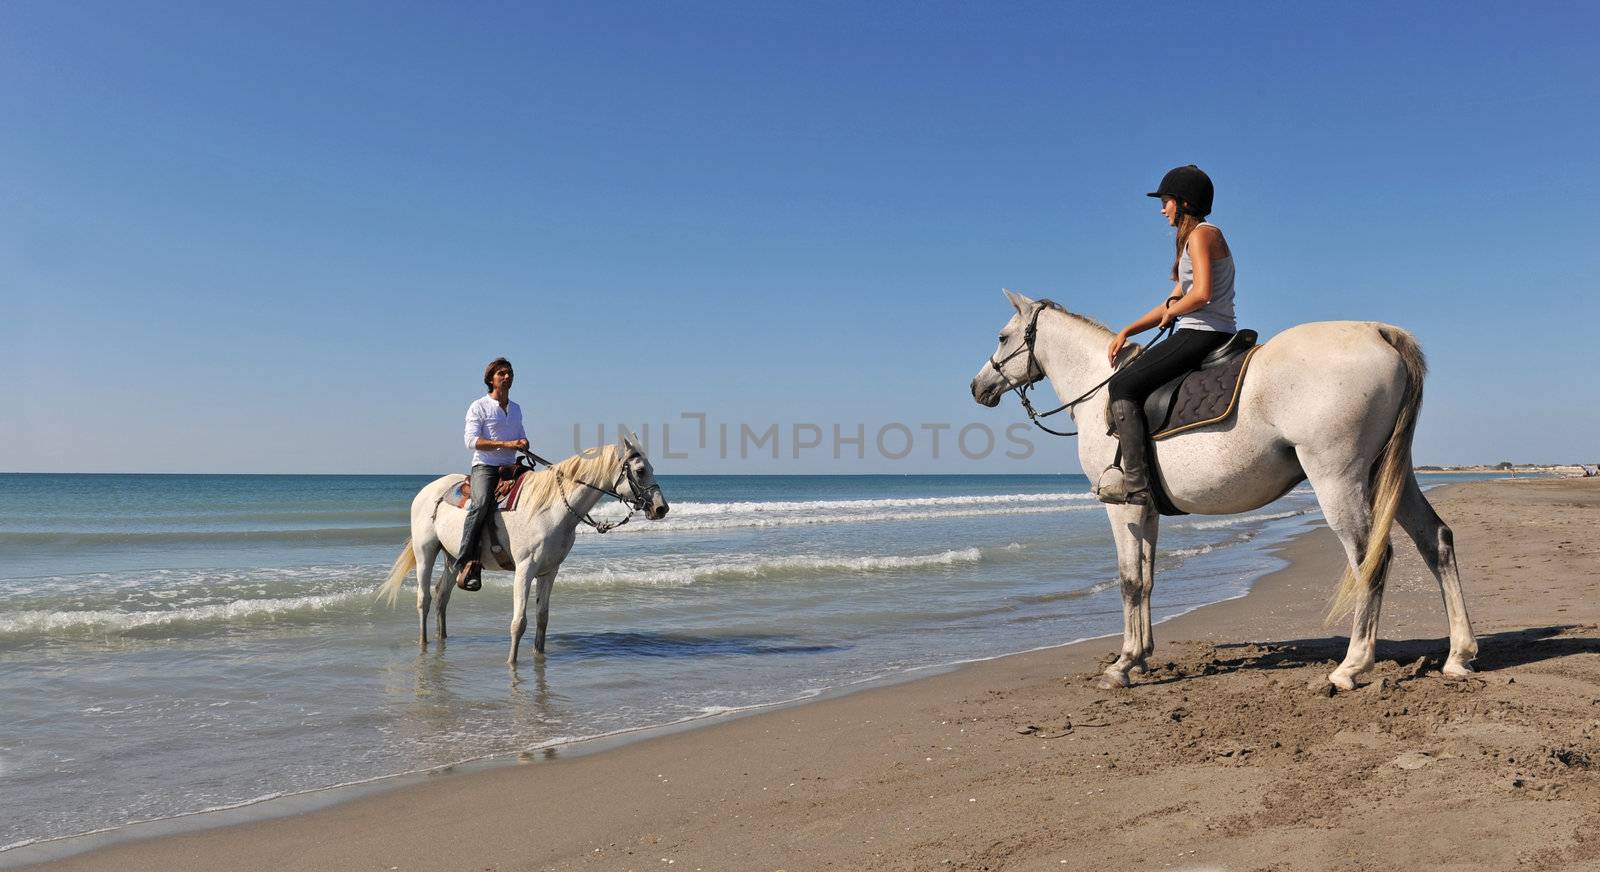 horseback riding in holidays by cynoclub